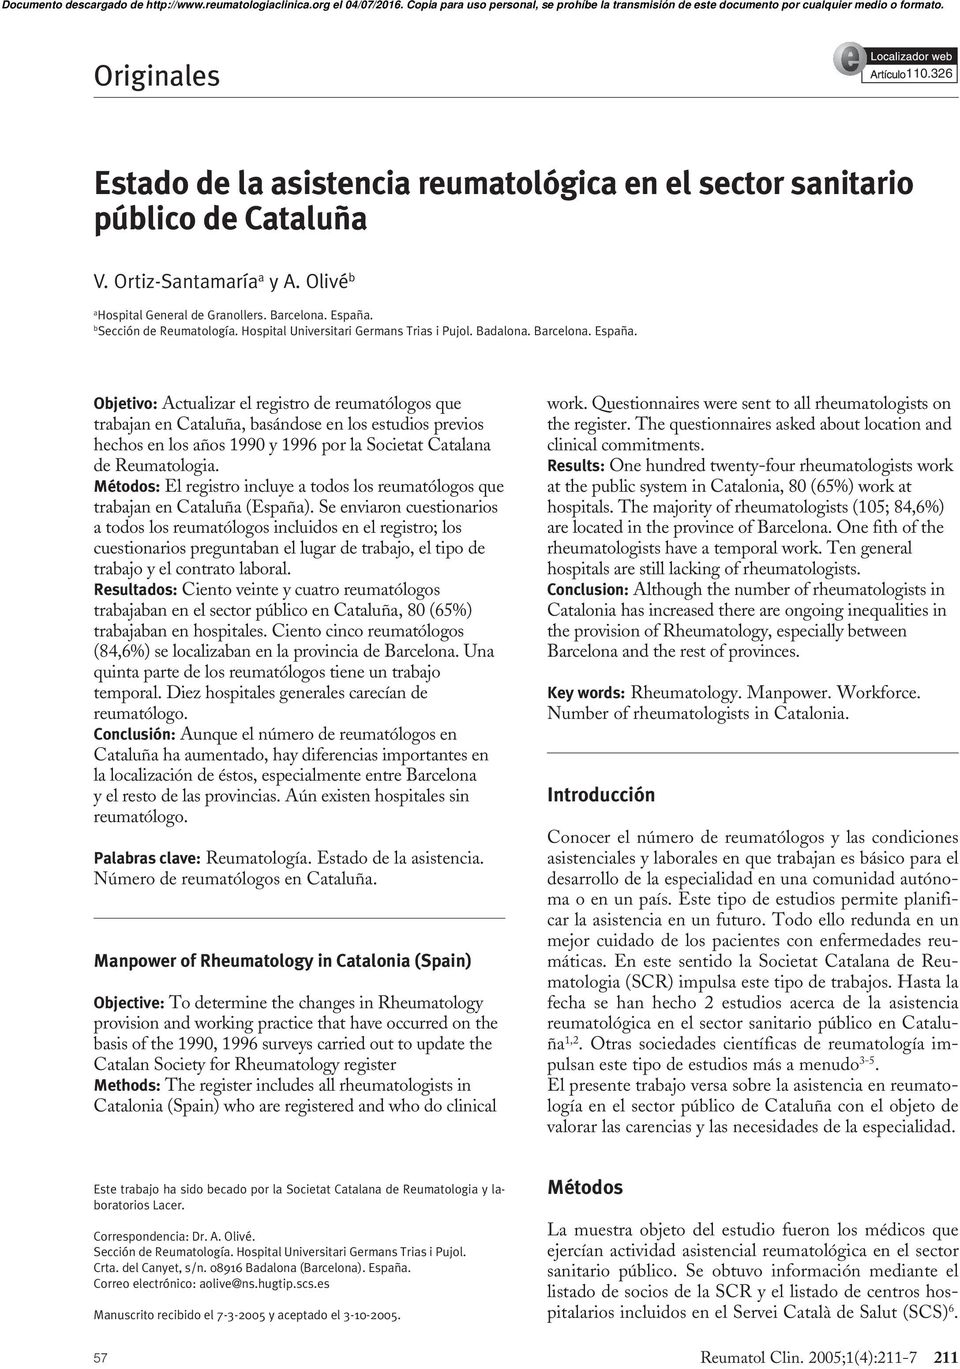 Objetivo: Actualizar el registro de reumatólogos que trabajan en Cataluña, basándose en los estudios previos hechos en los años 1990 y 1996 por la Societat Catalana de Reumatologia.